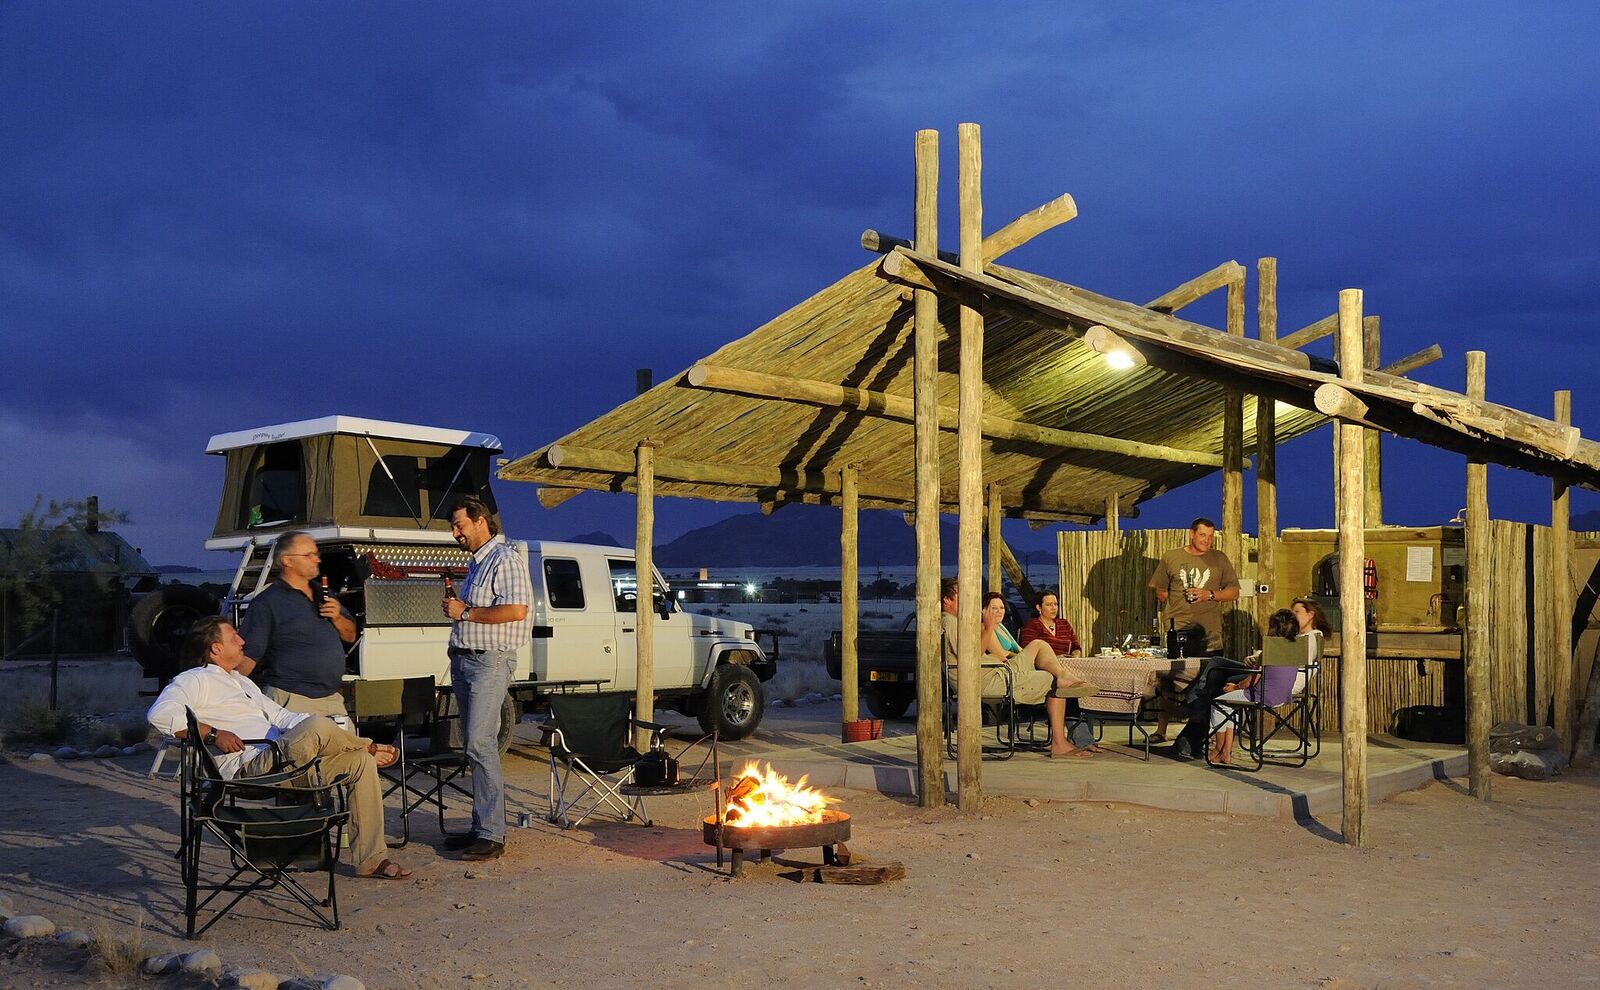 Camping site. Кемпинг Оазис. Кемпинг Оазис Саратовская область. Кемпинг в Оазис Каракан. Отели для туристов в Намибии фото.